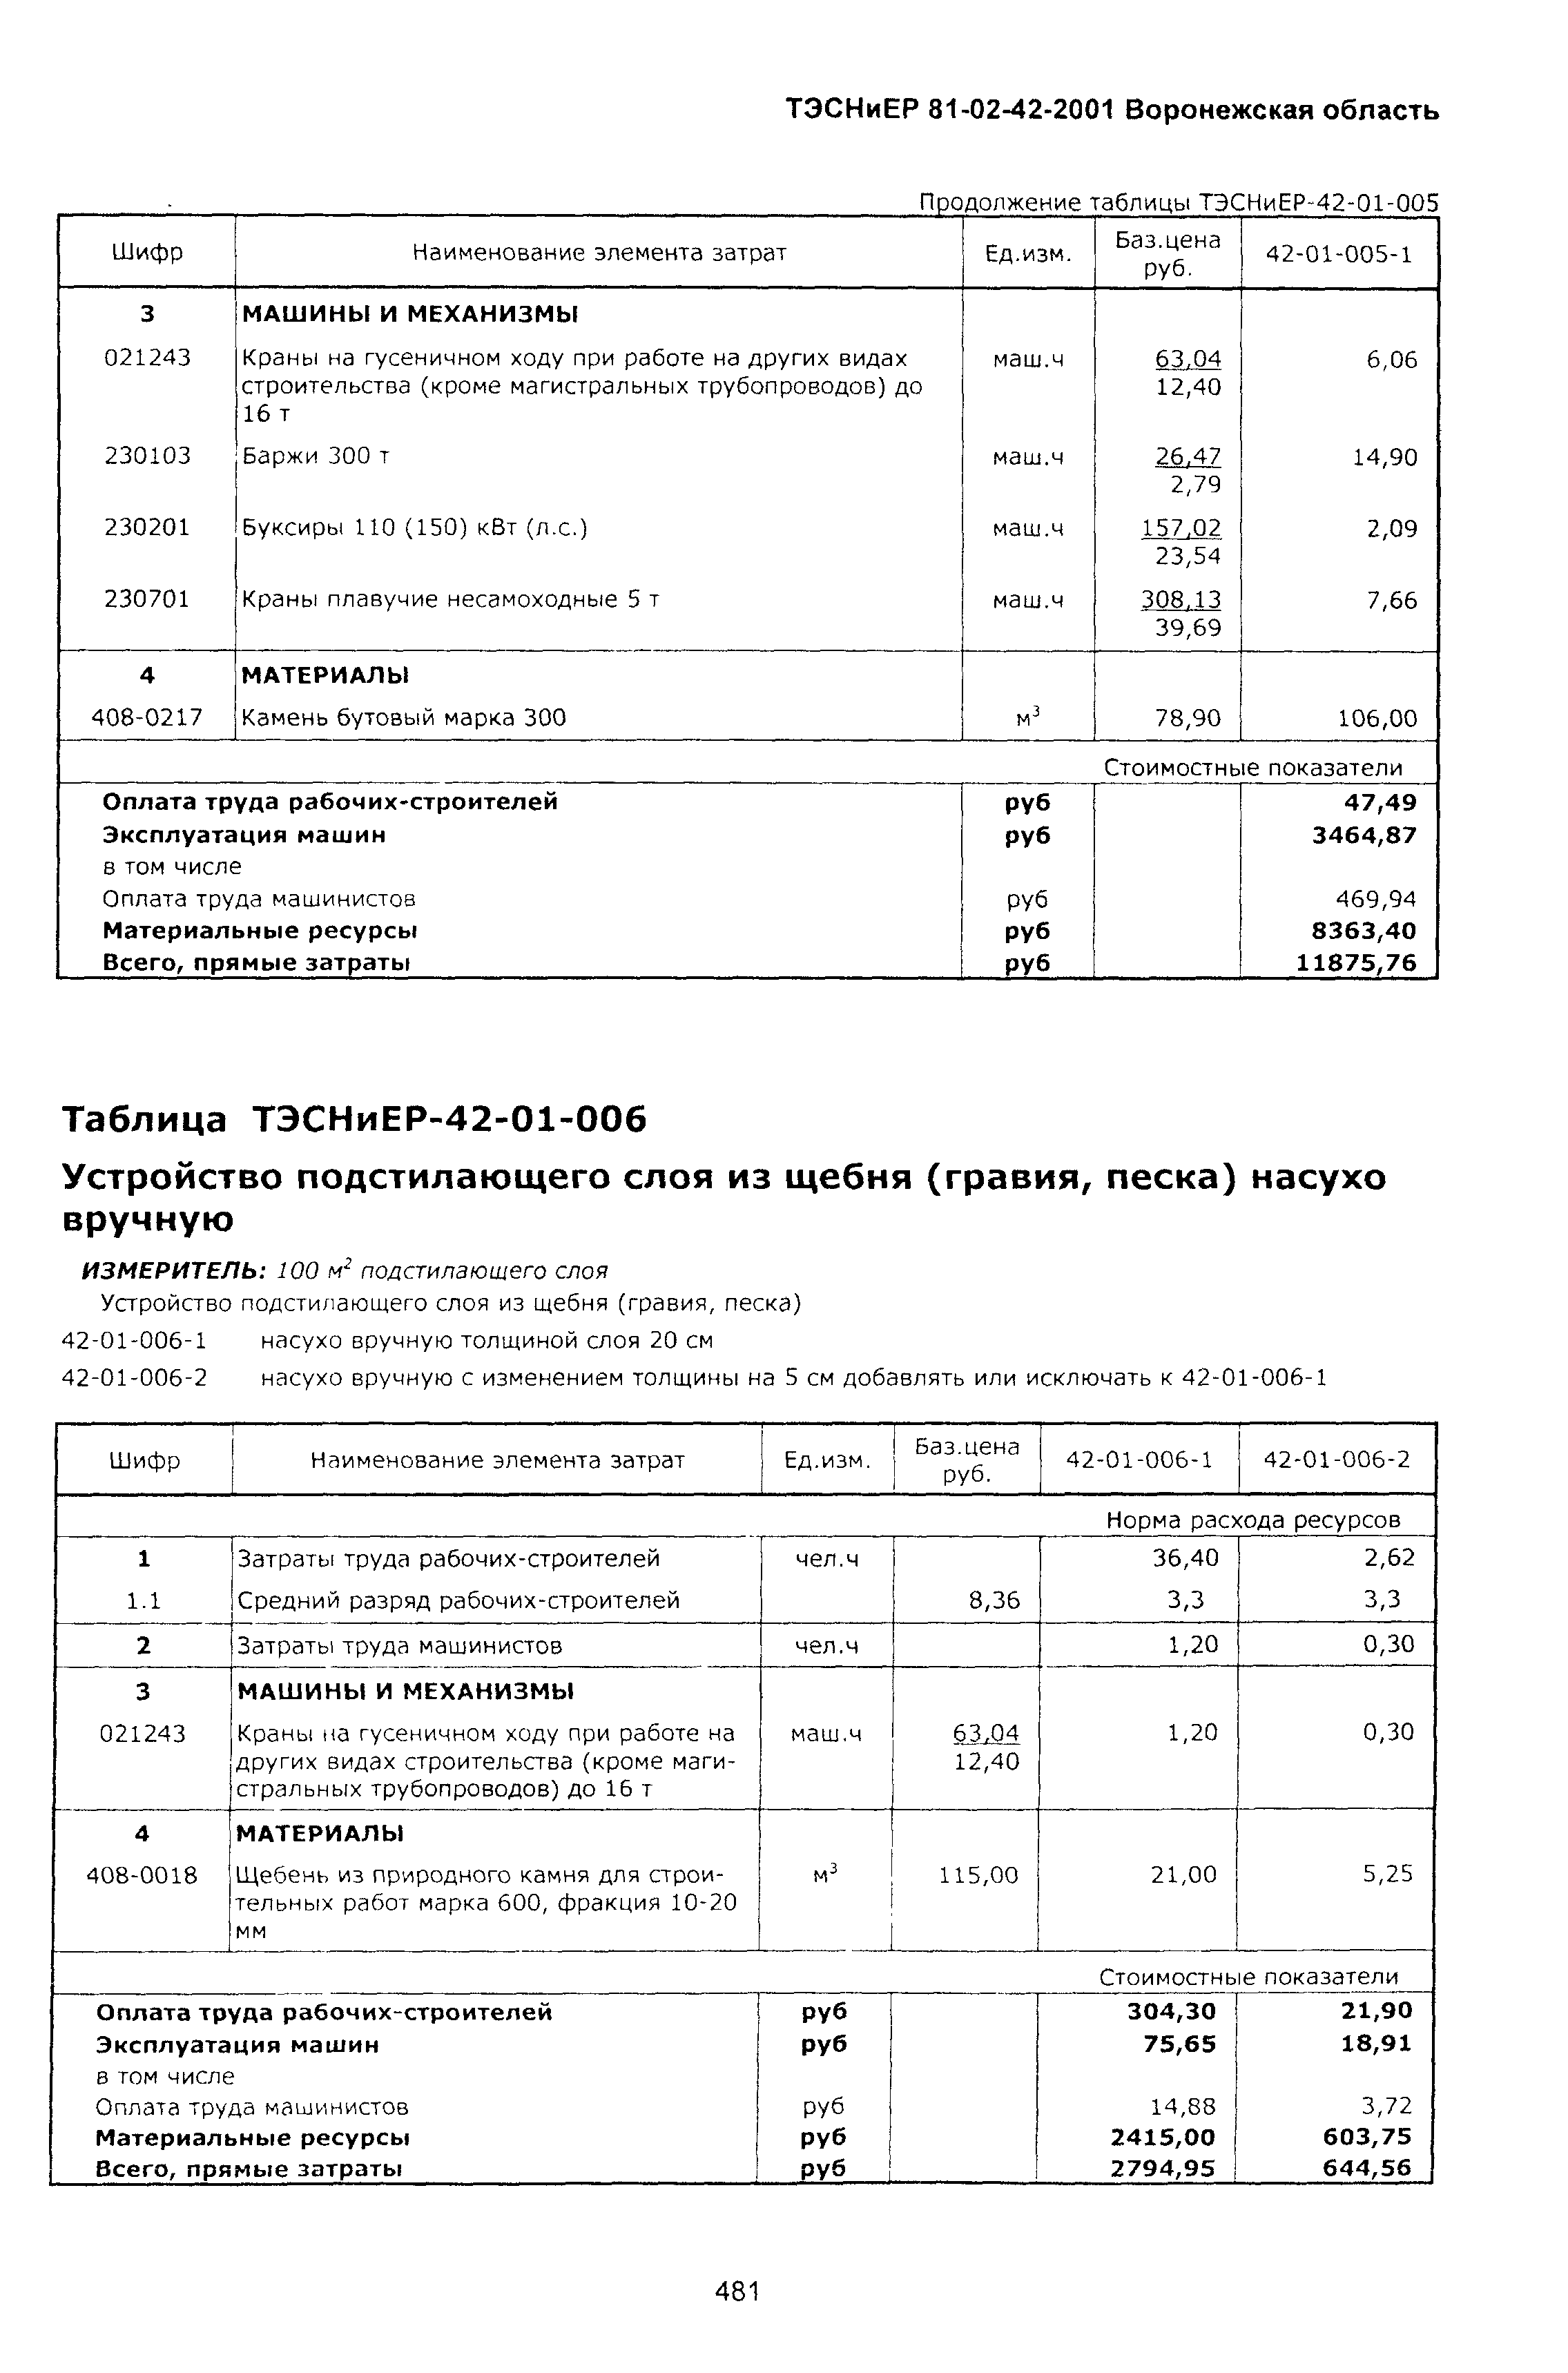 ТЭСНиЕР Воронежской области 81-02-42-2001